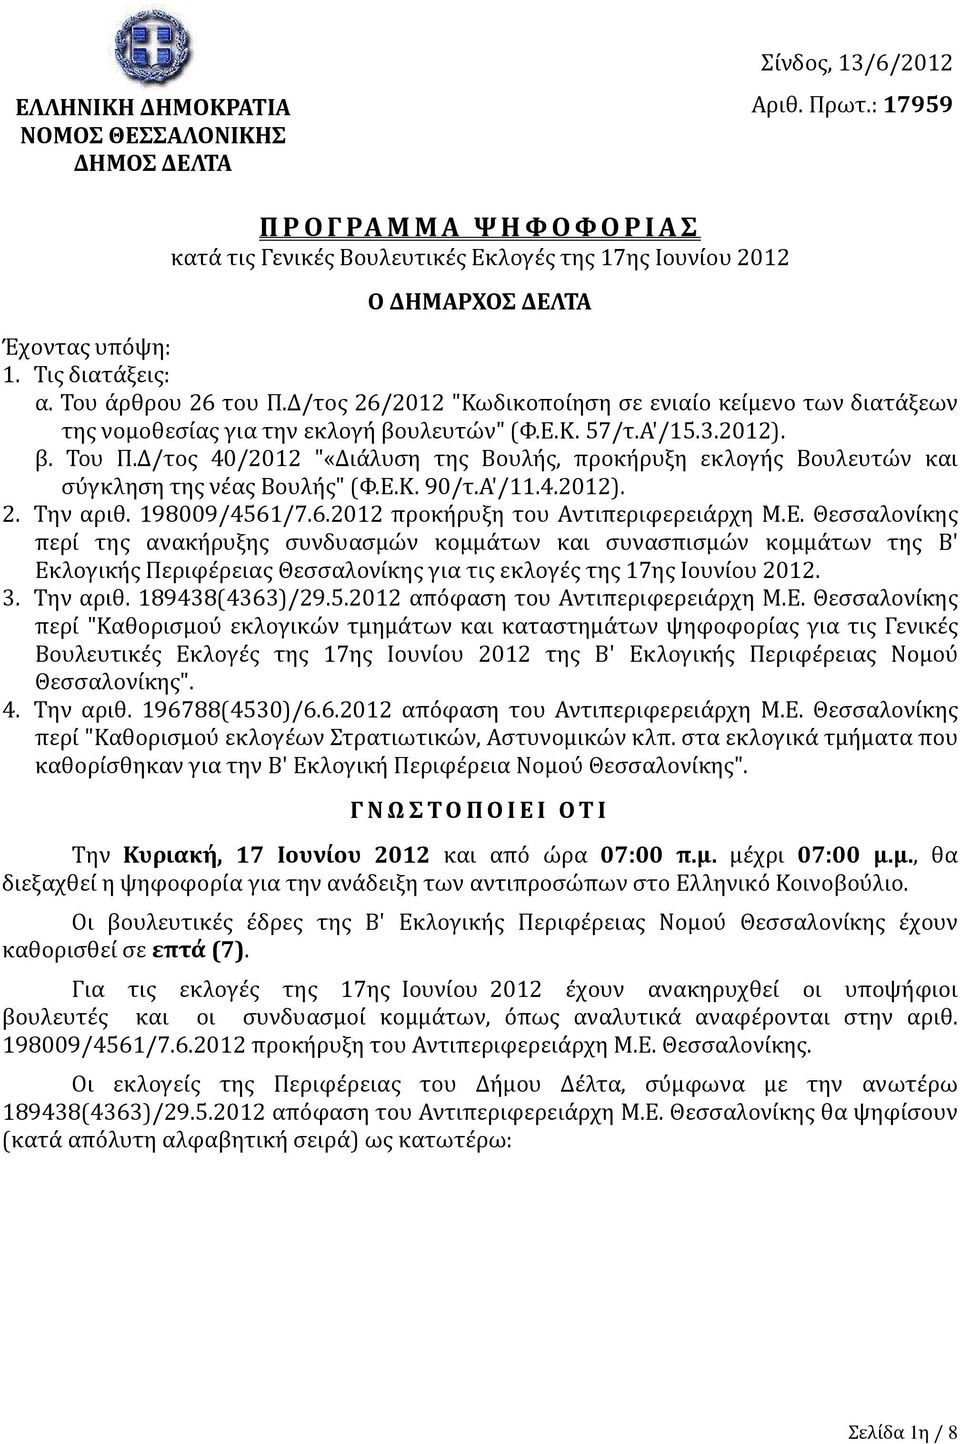 Δ/τος 26/2012 "Κωδικοποίηση σε ενιαίο κείμενο των διατάξεων της νομοθεσίας για την εκλογή βουλευτών" (Φ.Ε.Κ. 57/τ.Α'/15.3.2012). β. Του Π.